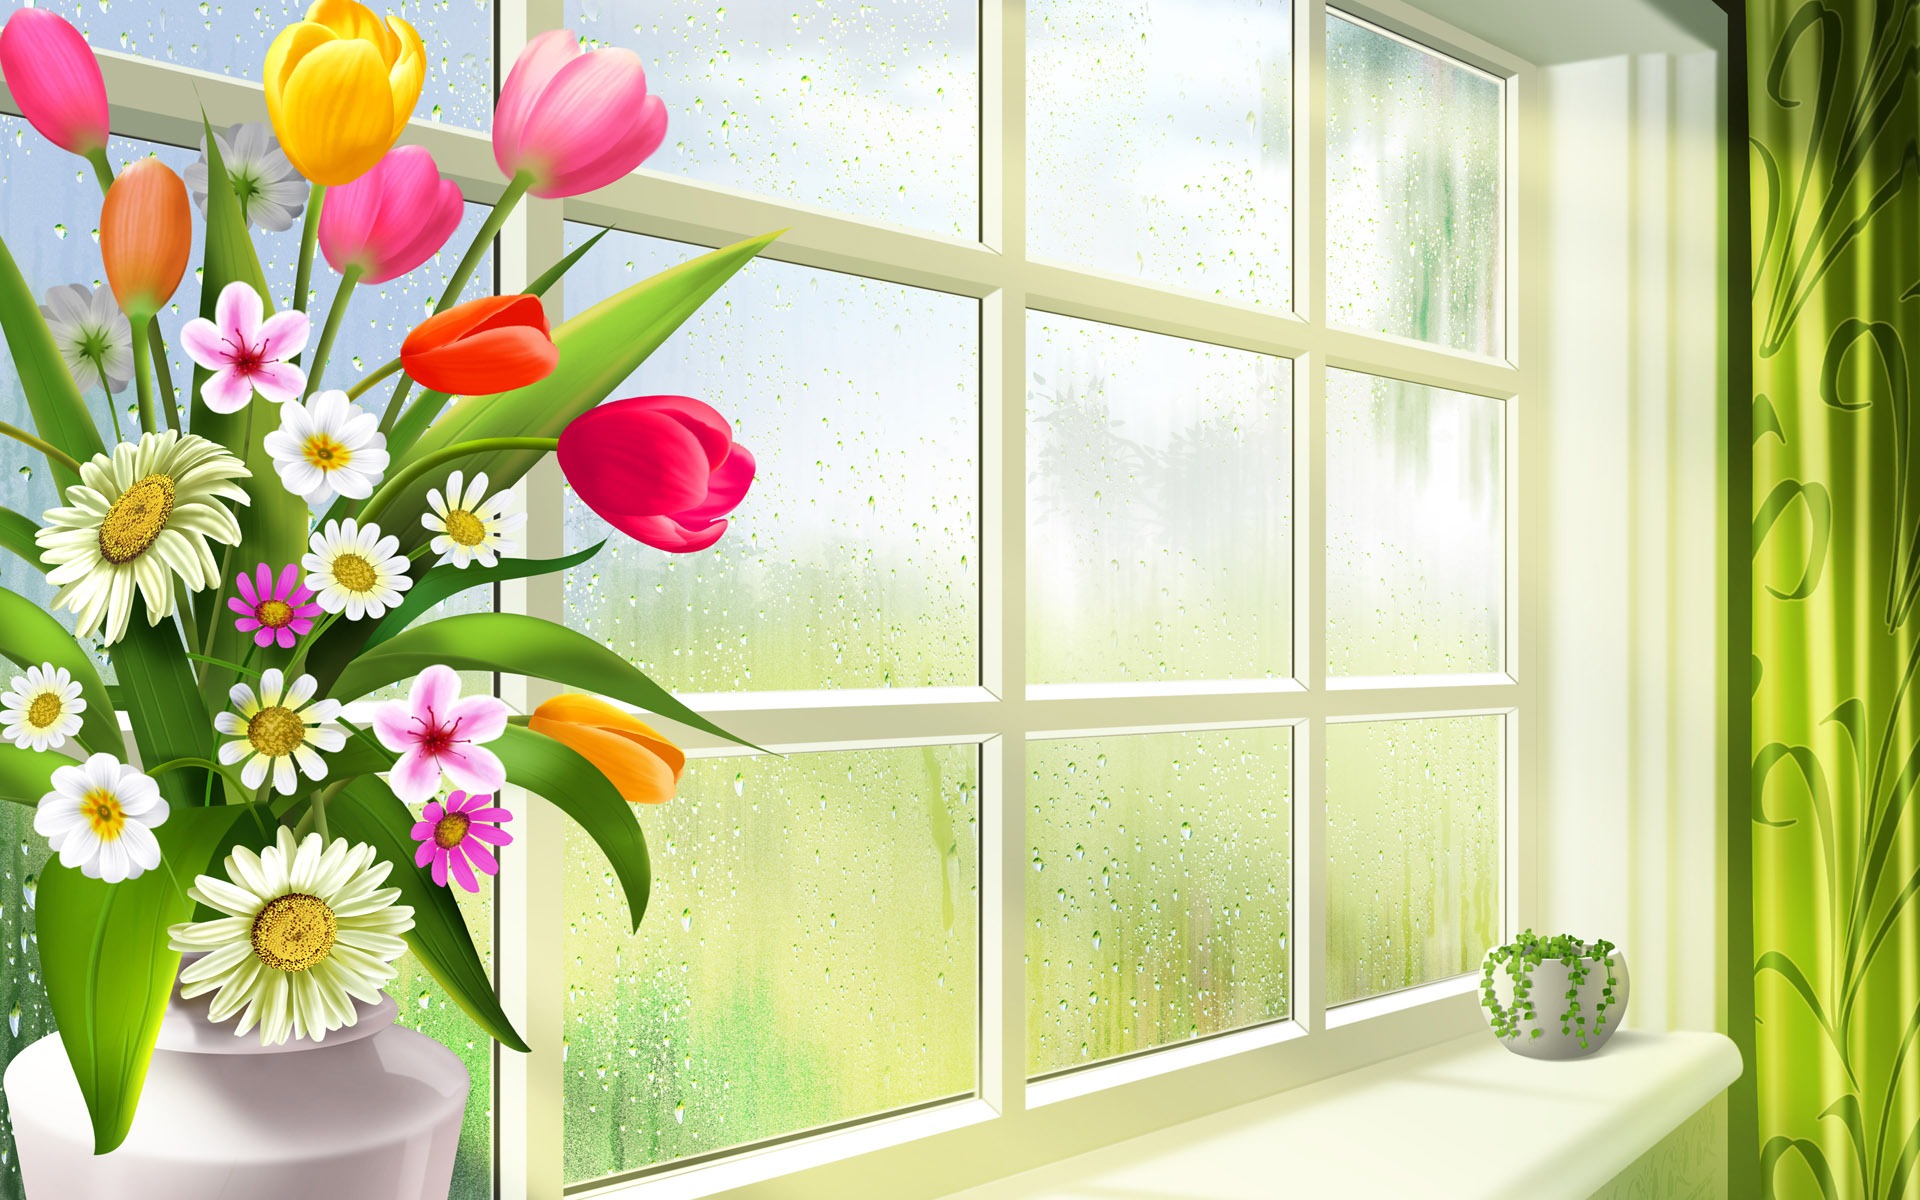 bonjour fond d'écran hd,fleur,fenêtre,plante,mur,chambre